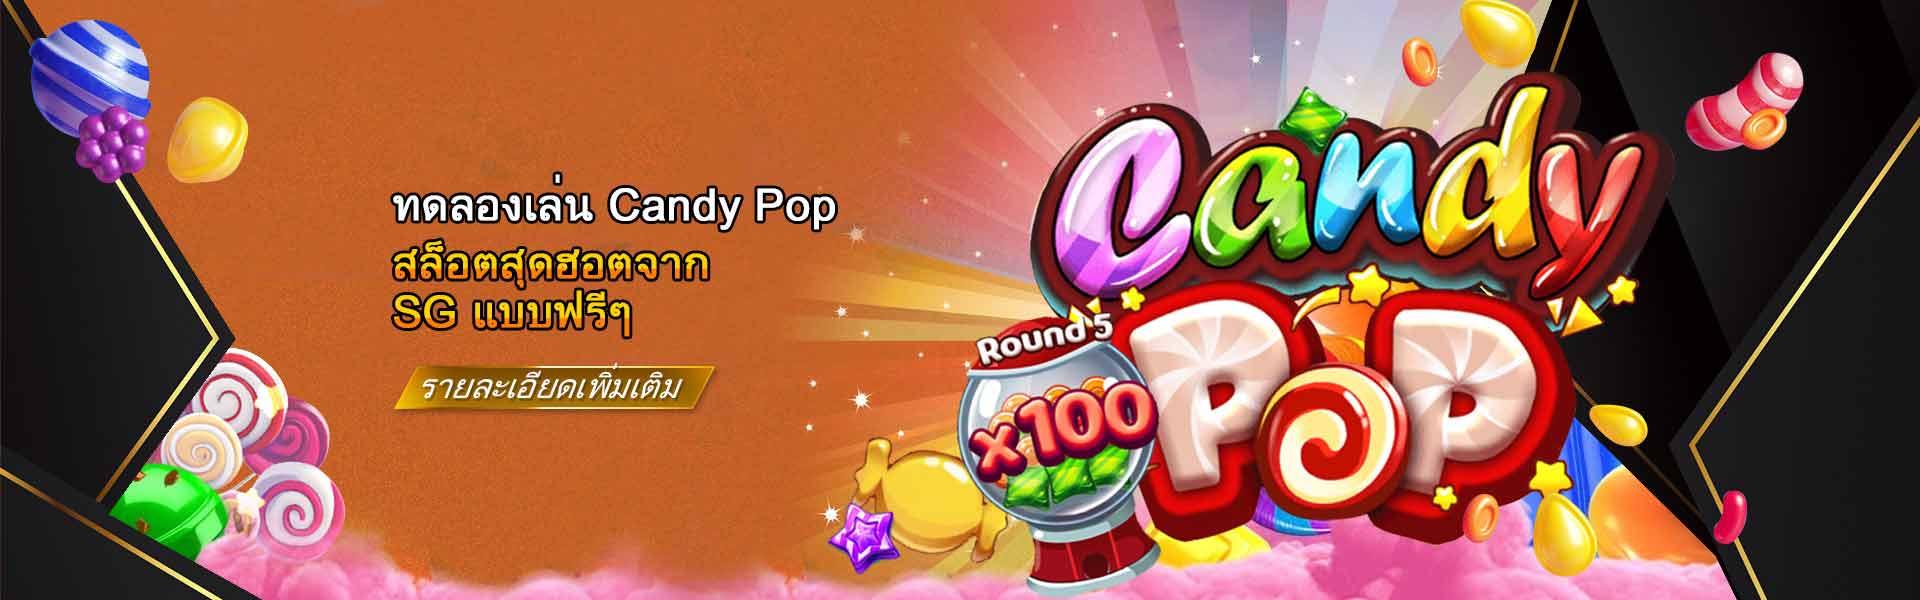 ทดลองเล่นสล็อต-Candy-pop-สุดฮอตจาก-SG-1920x600